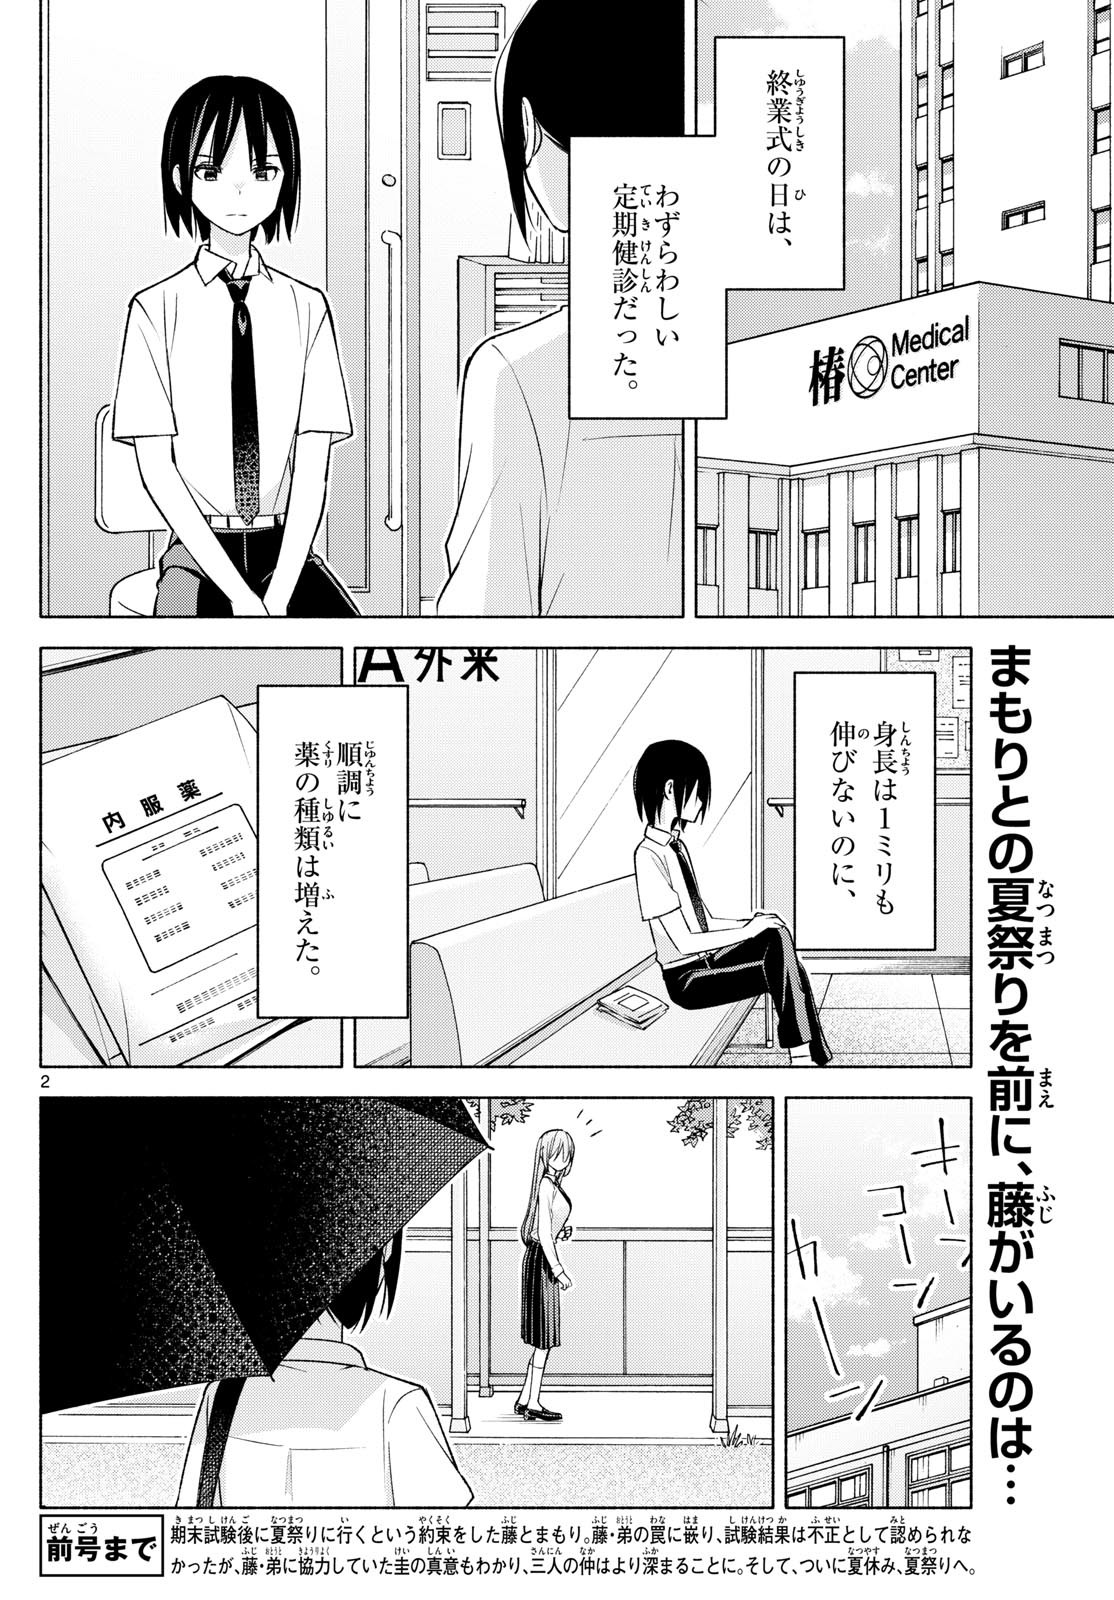 Kimi to Warui Koto ga Shitai - Chapter 044 - Page 2